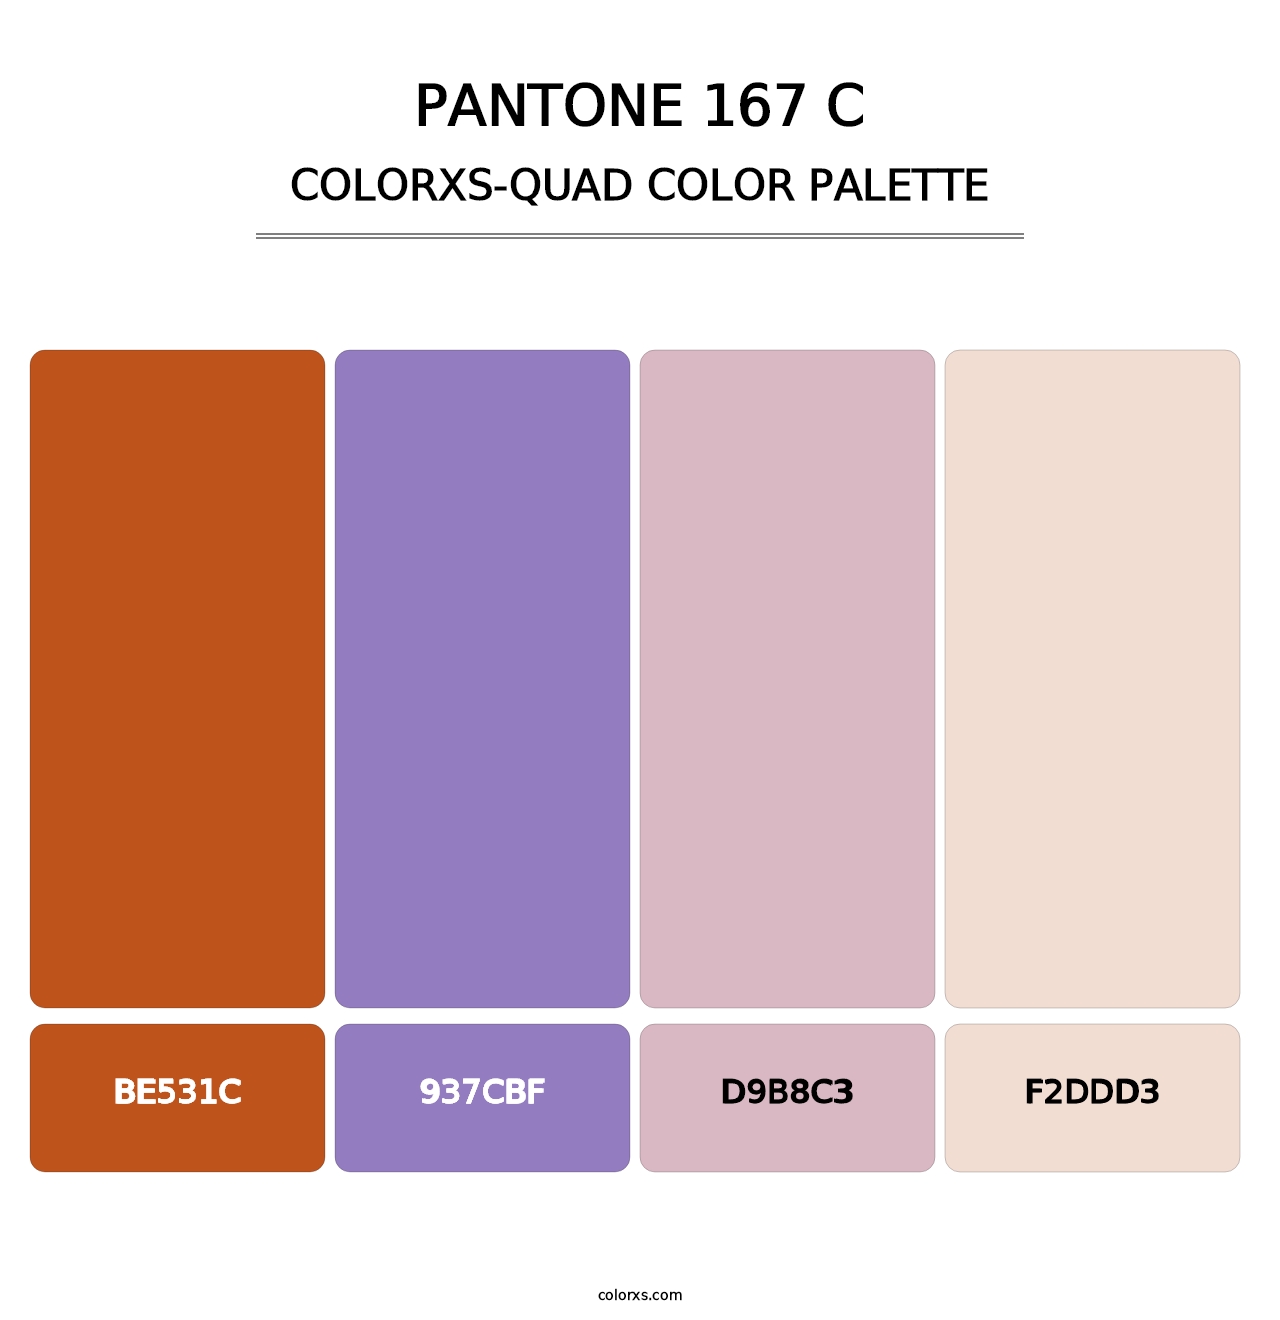 PANTONE 167 C - Colorxs Quad Palette